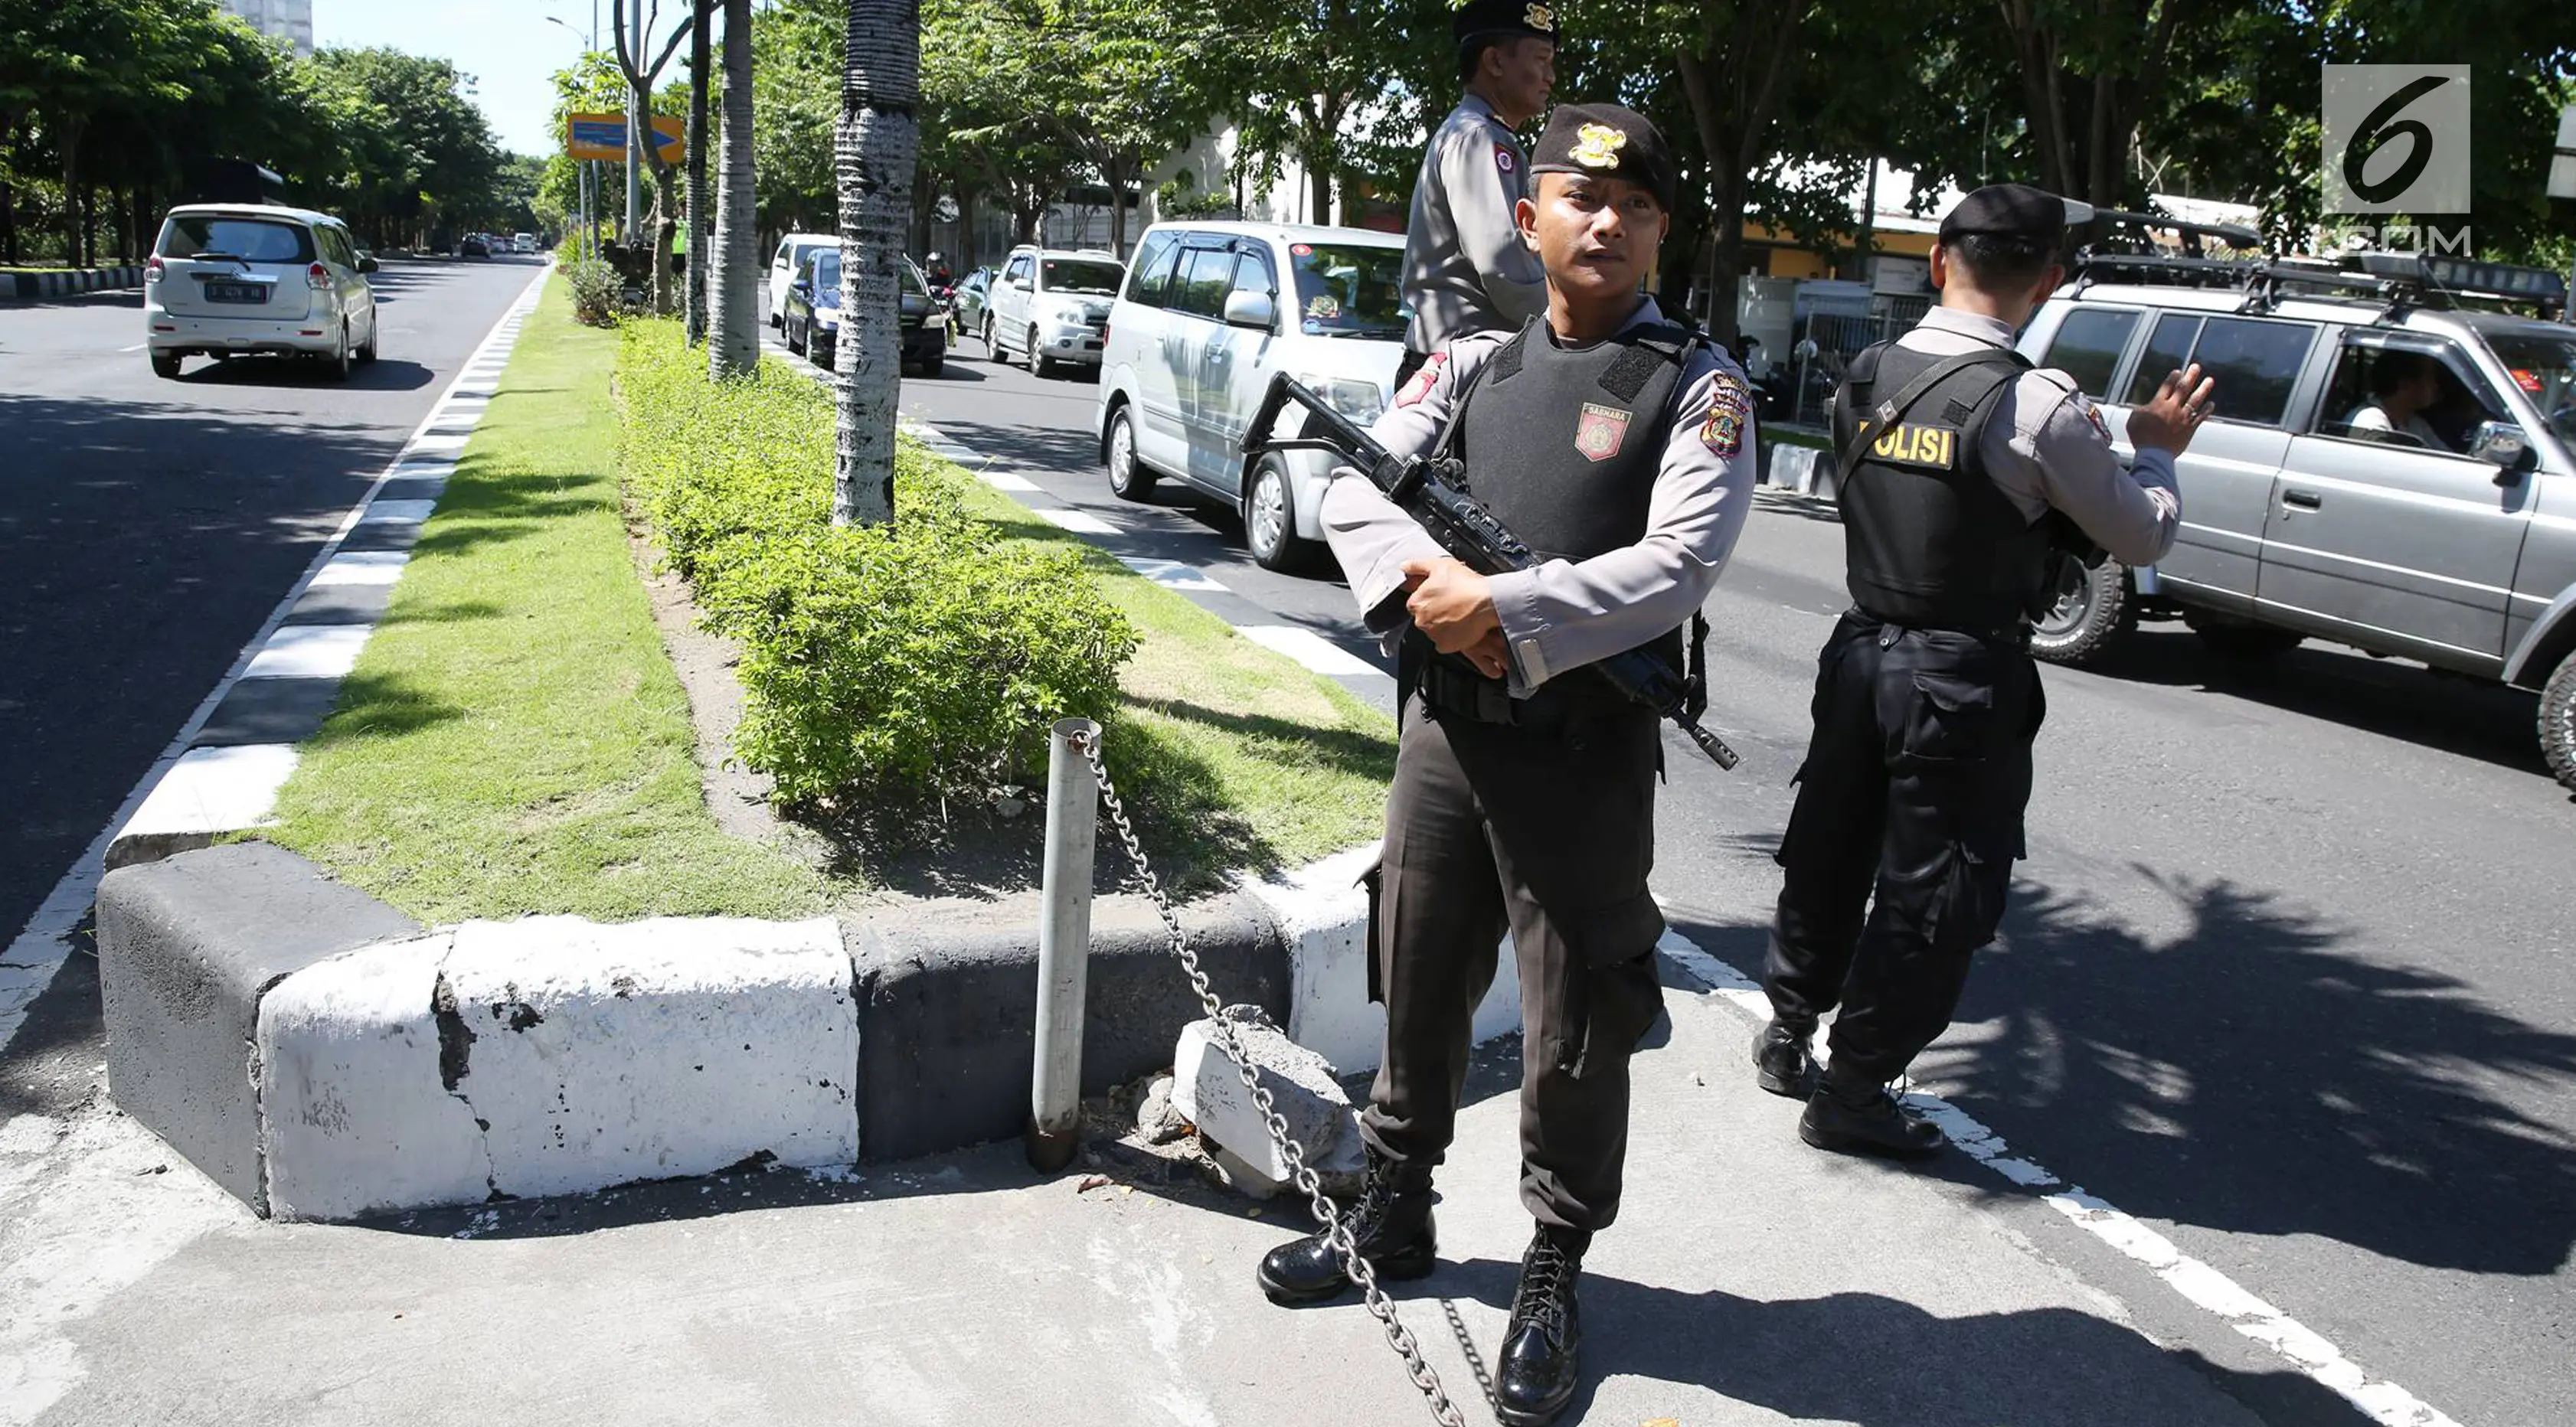 Petugas kepolisian bersiaga di sepanjang jalur yang dilalui rombongan Barack Obama menuju Base Ops Lanud Ngurah Rai, Bali, Rabu (28/6). Obama dan keluarga meninggalkan Bali untuk melanjutkan liburan ke Yogyakarta. (Liputan6.com/Immanuel Antonius) 